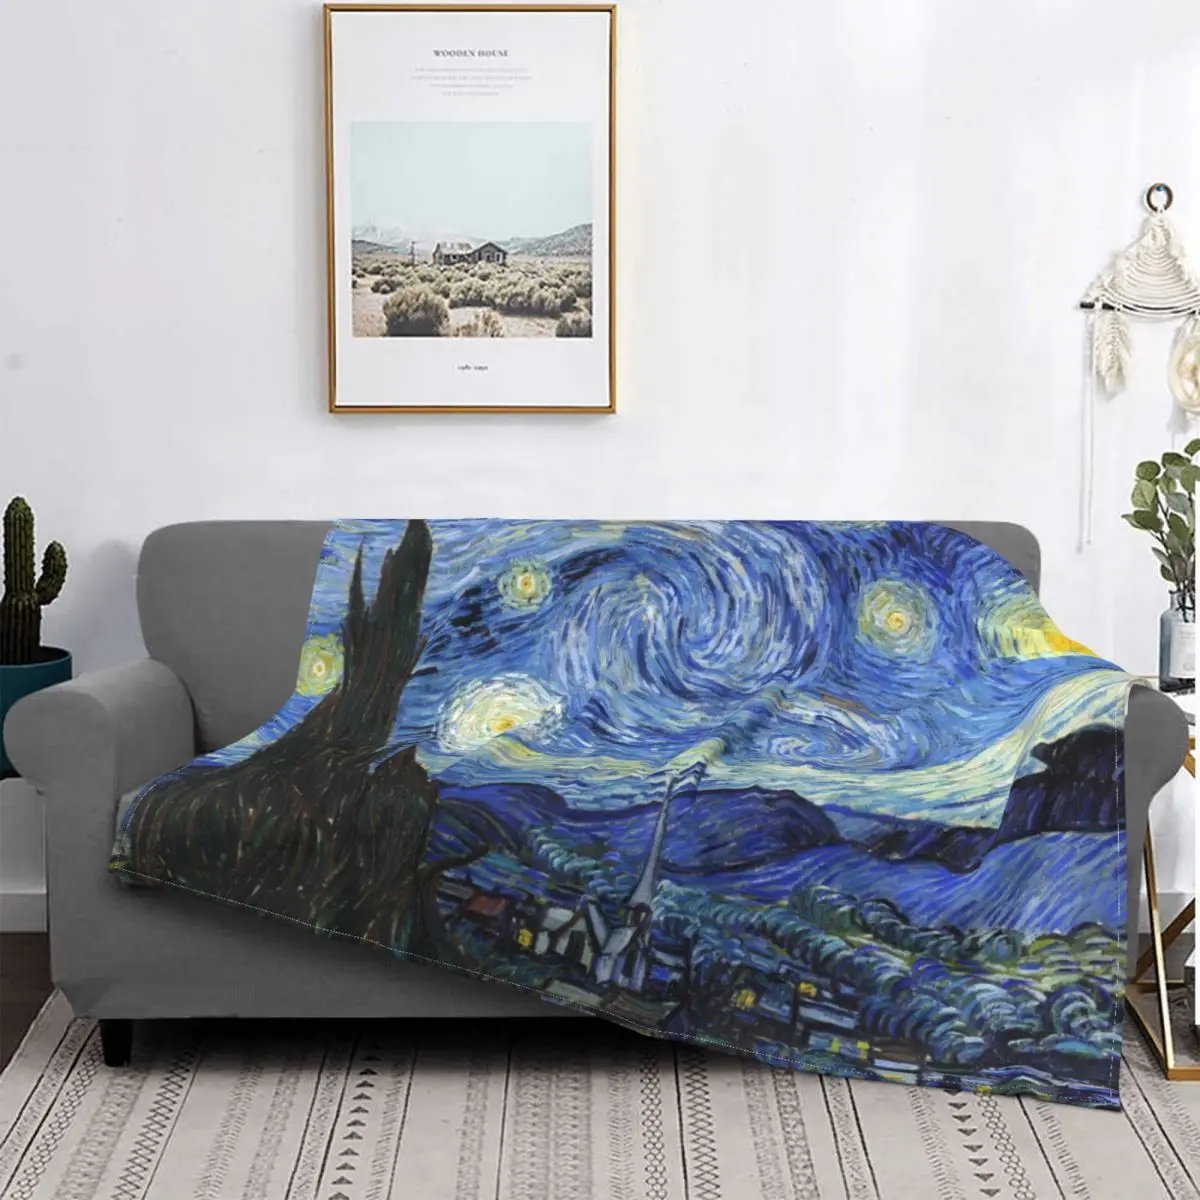 

Одеяло Винсента Ван Гога из кораллового флиса, плюшевое супер теплое покрывало с рисунком звездной ночи, постельное белье, покрывало на див...